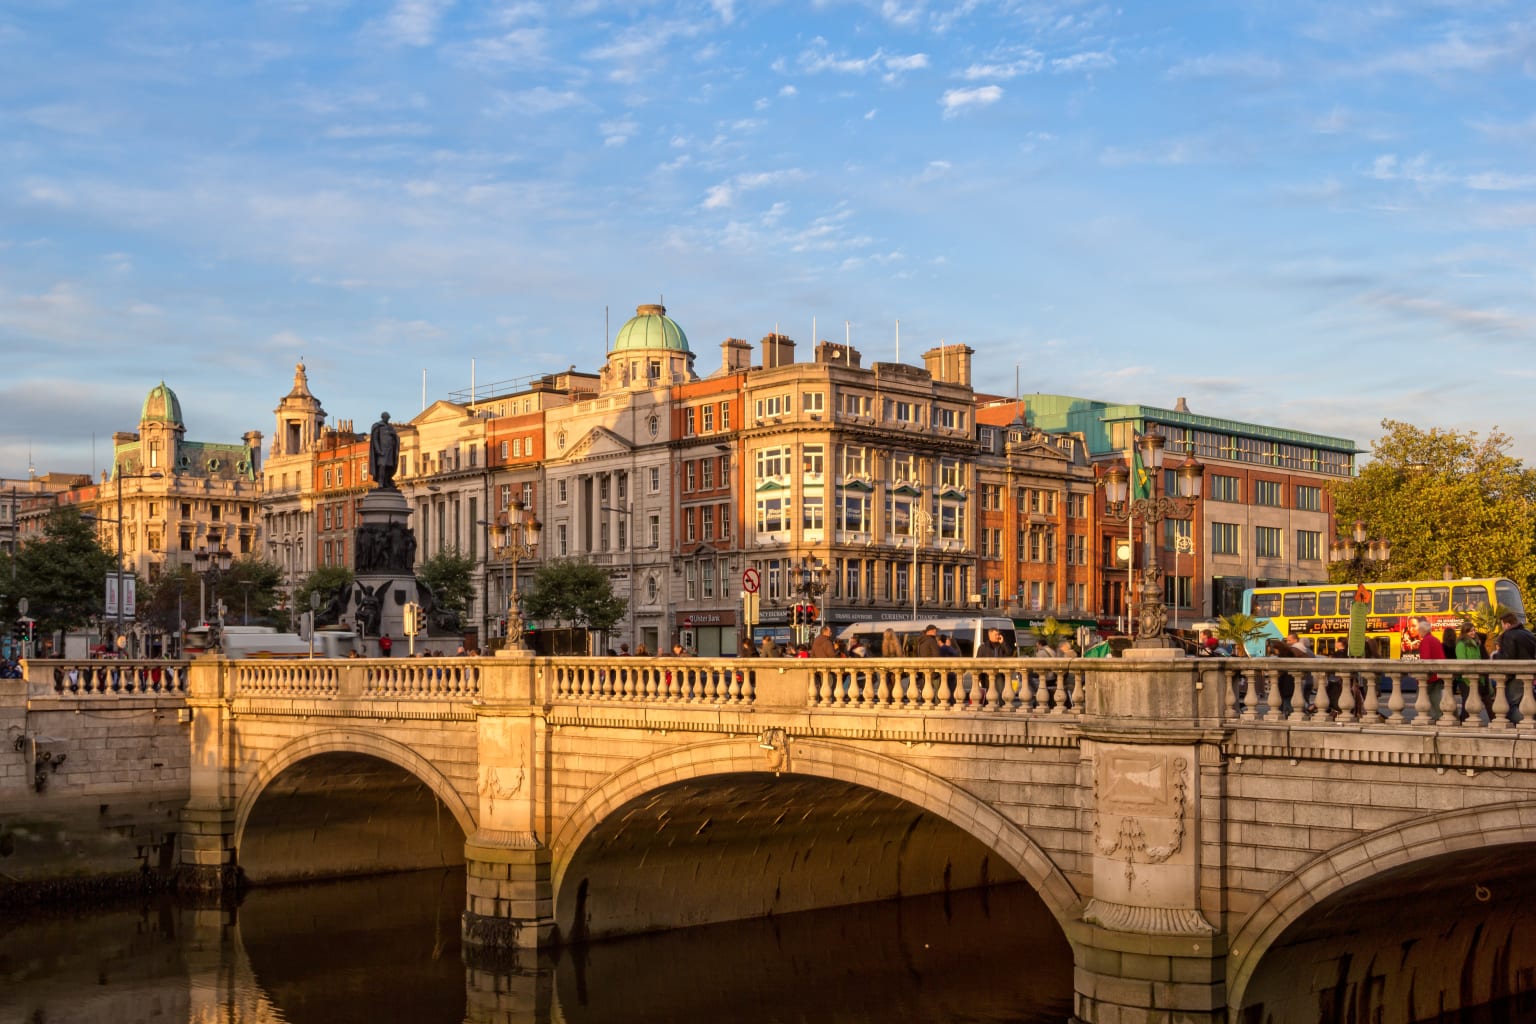 A bridge in Dublin, Ireland.